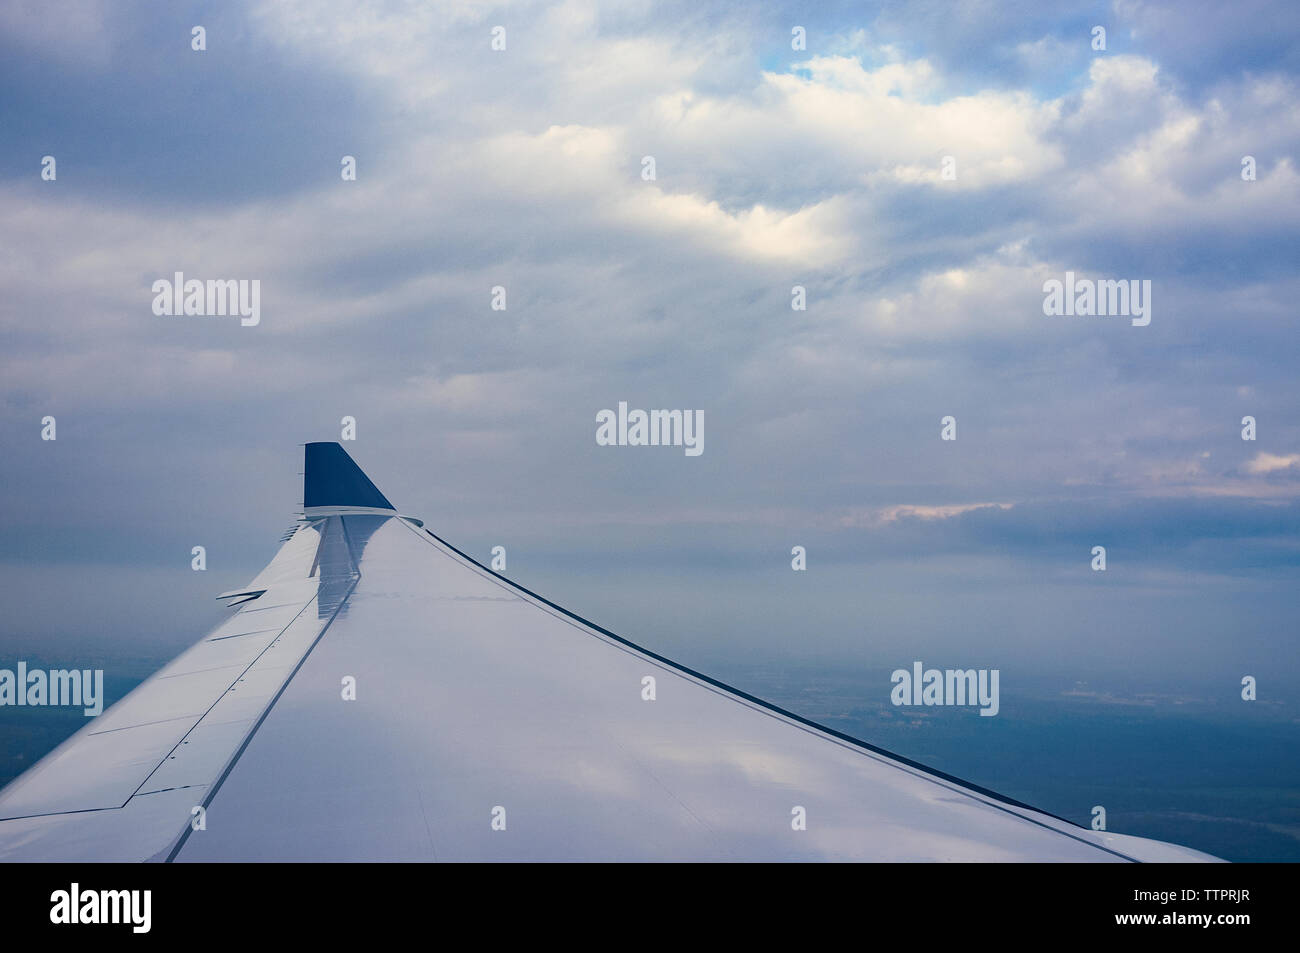 Imagen recortada del avión volando contra el cielo nublado Foto de stock